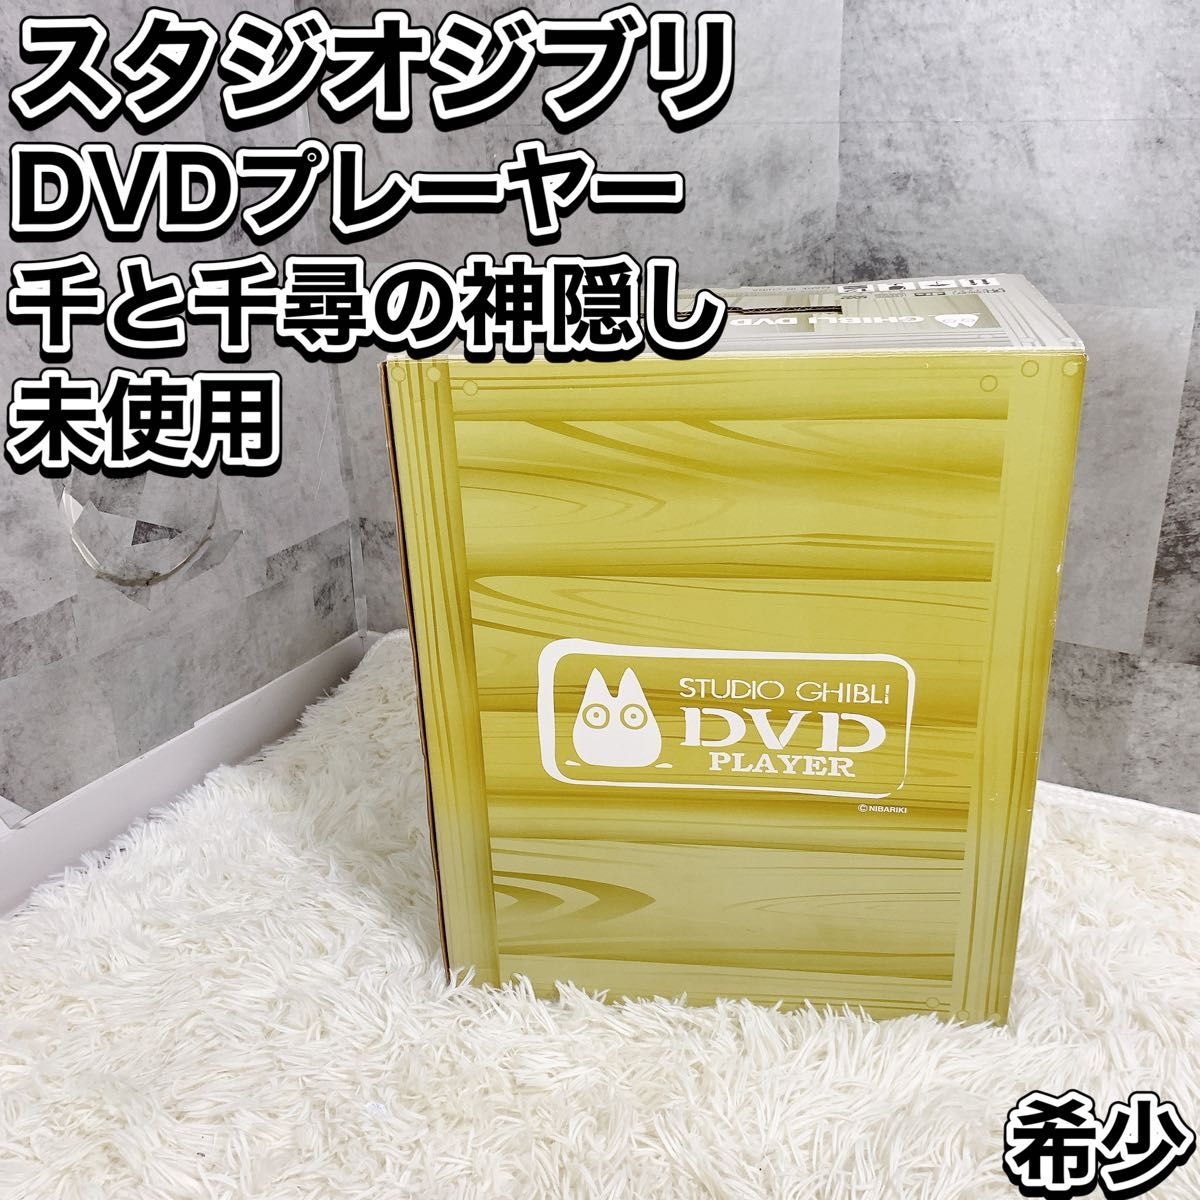 ジブリ DVDプレーヤー BVHE-SG1 - テレビ/映像機器